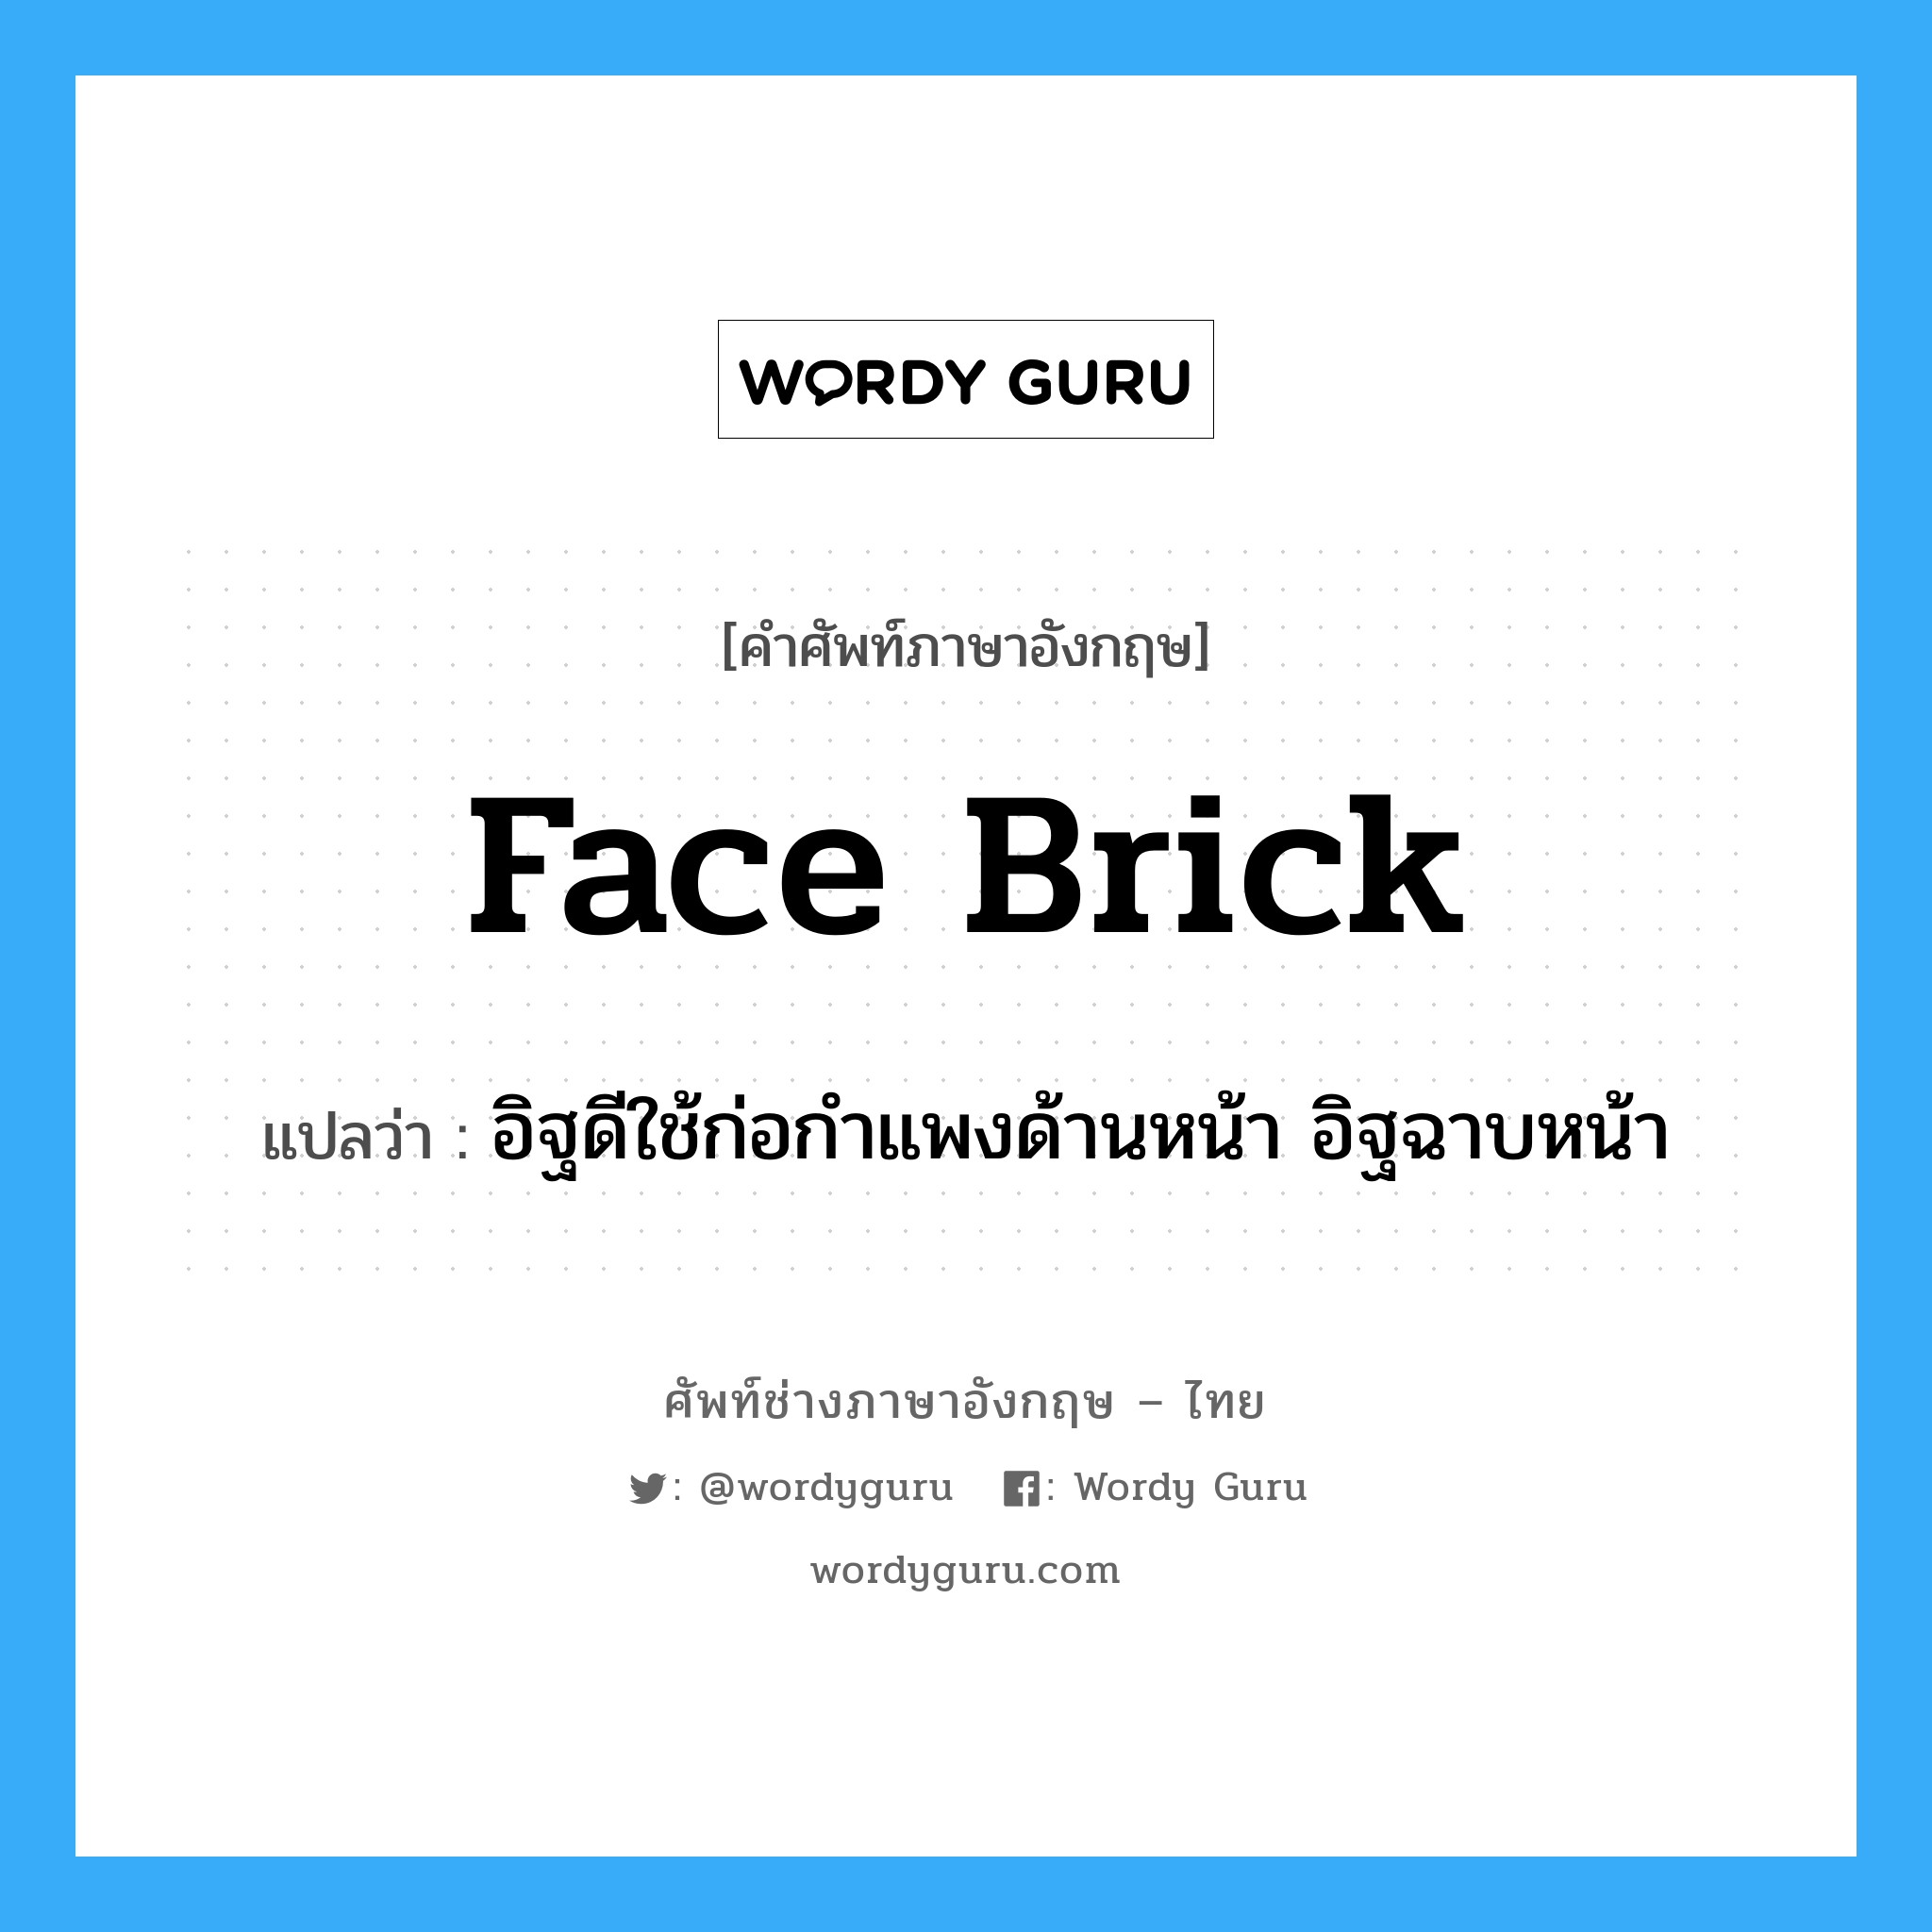 face brick แปลว่า?, คำศัพท์ช่างภาษาอังกฤษ - ไทย face brick คำศัพท์ภาษาอังกฤษ face brick แปลว่า อิฐดีใช้ก่อกำแพงด้านหน้า อิฐฉาบหน้า